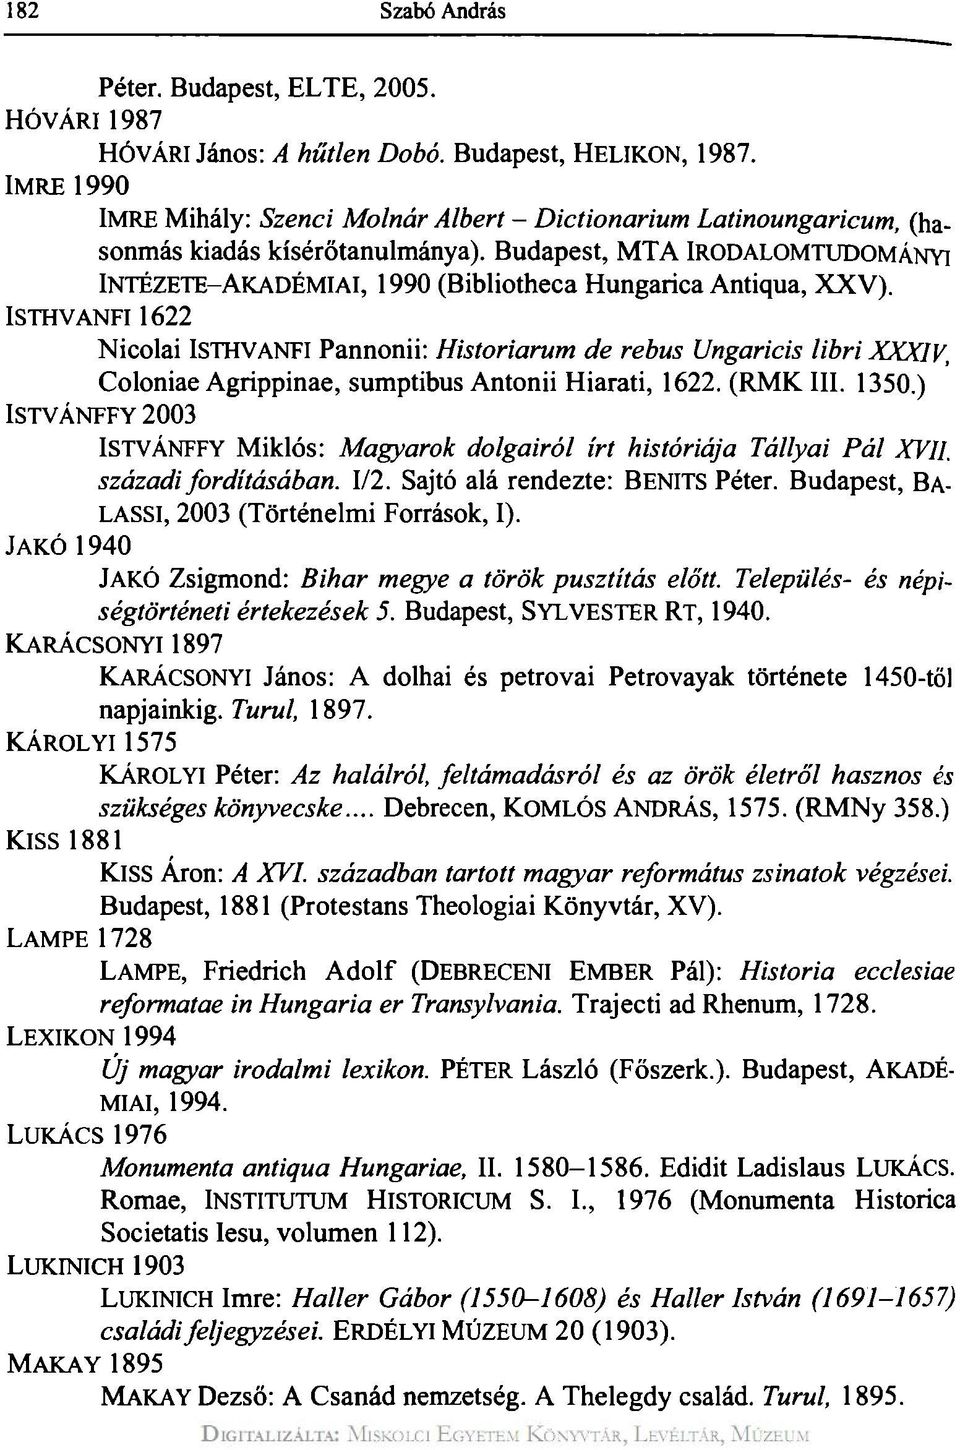 ISTHVANFI 1622 Nicolai ISTHVANFI Pannonii: Historiarum de rebus Ungaricis libri XXXIV, Coloniae Agrippinae, sumptibus Antonii Hiarati, 1622. (RMKIII. 1350.